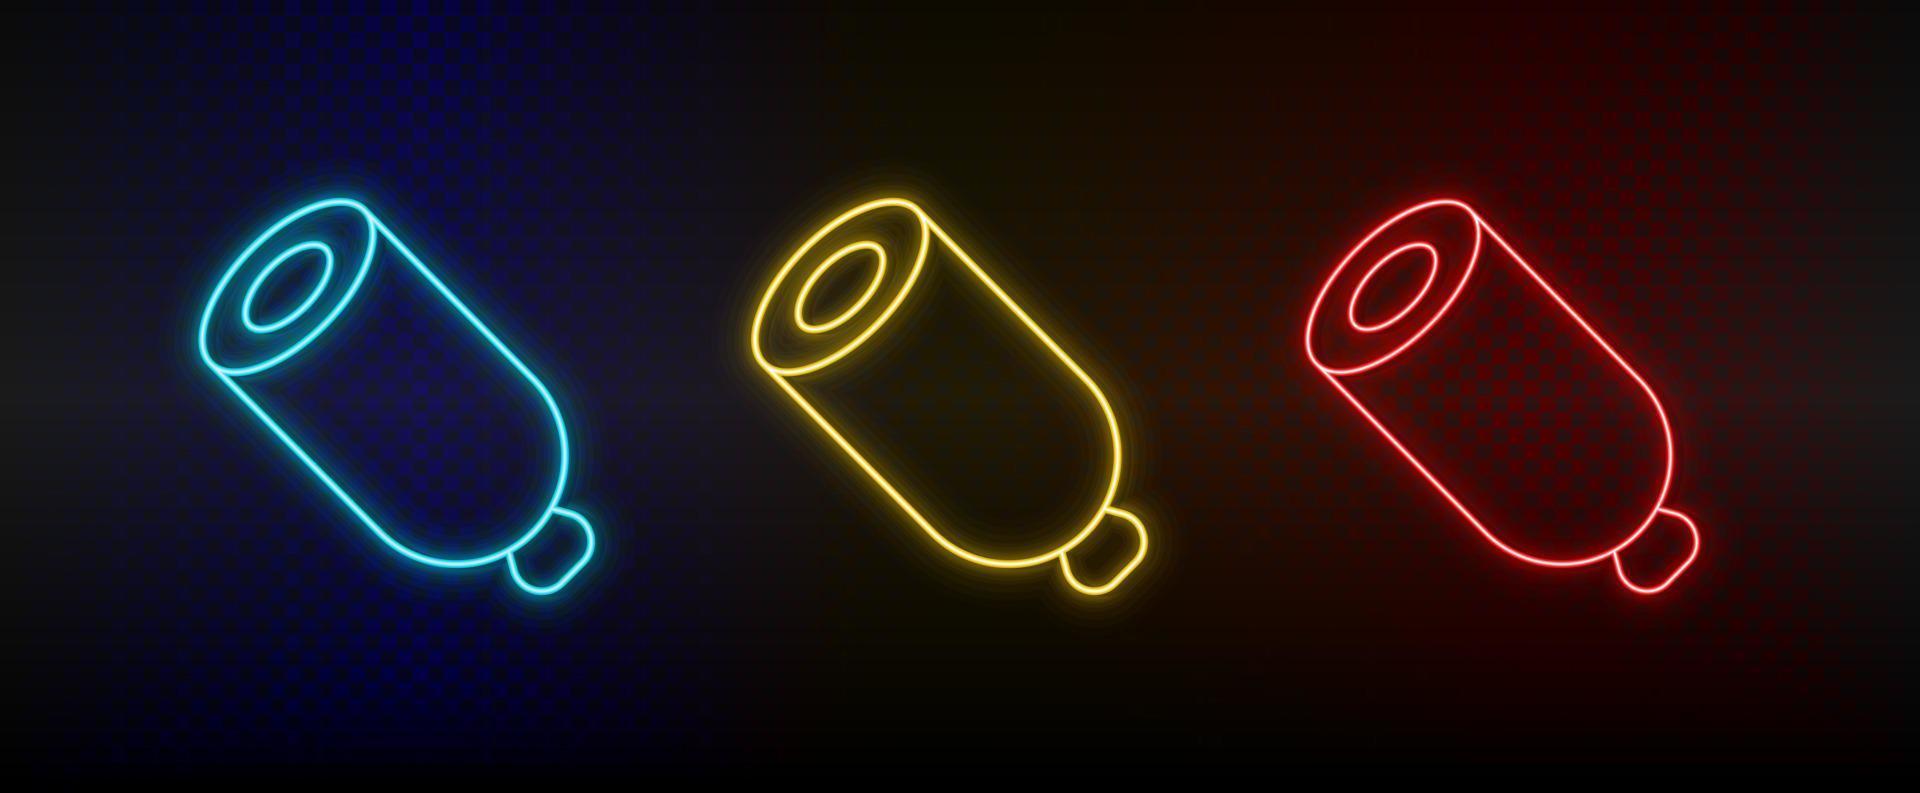 Neon- Symbol einstellen Wurst, Mahlzeit. einstellen von Rot, Blau, Gelb Neon- Vektor Symbol auf dunkel Hintergrund